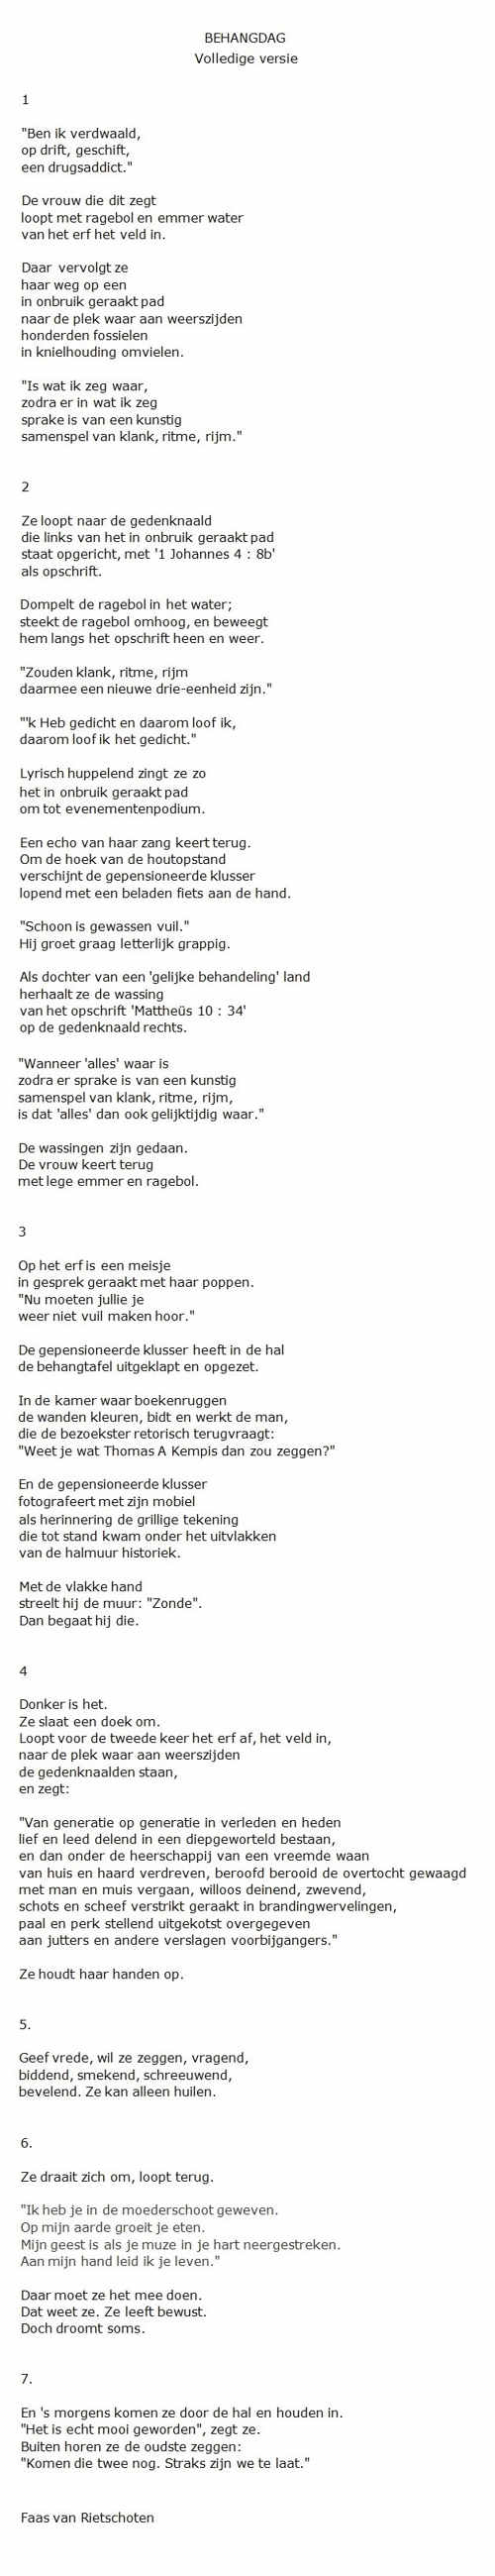 Gedicht Behangdag van Faas van Rietschoten